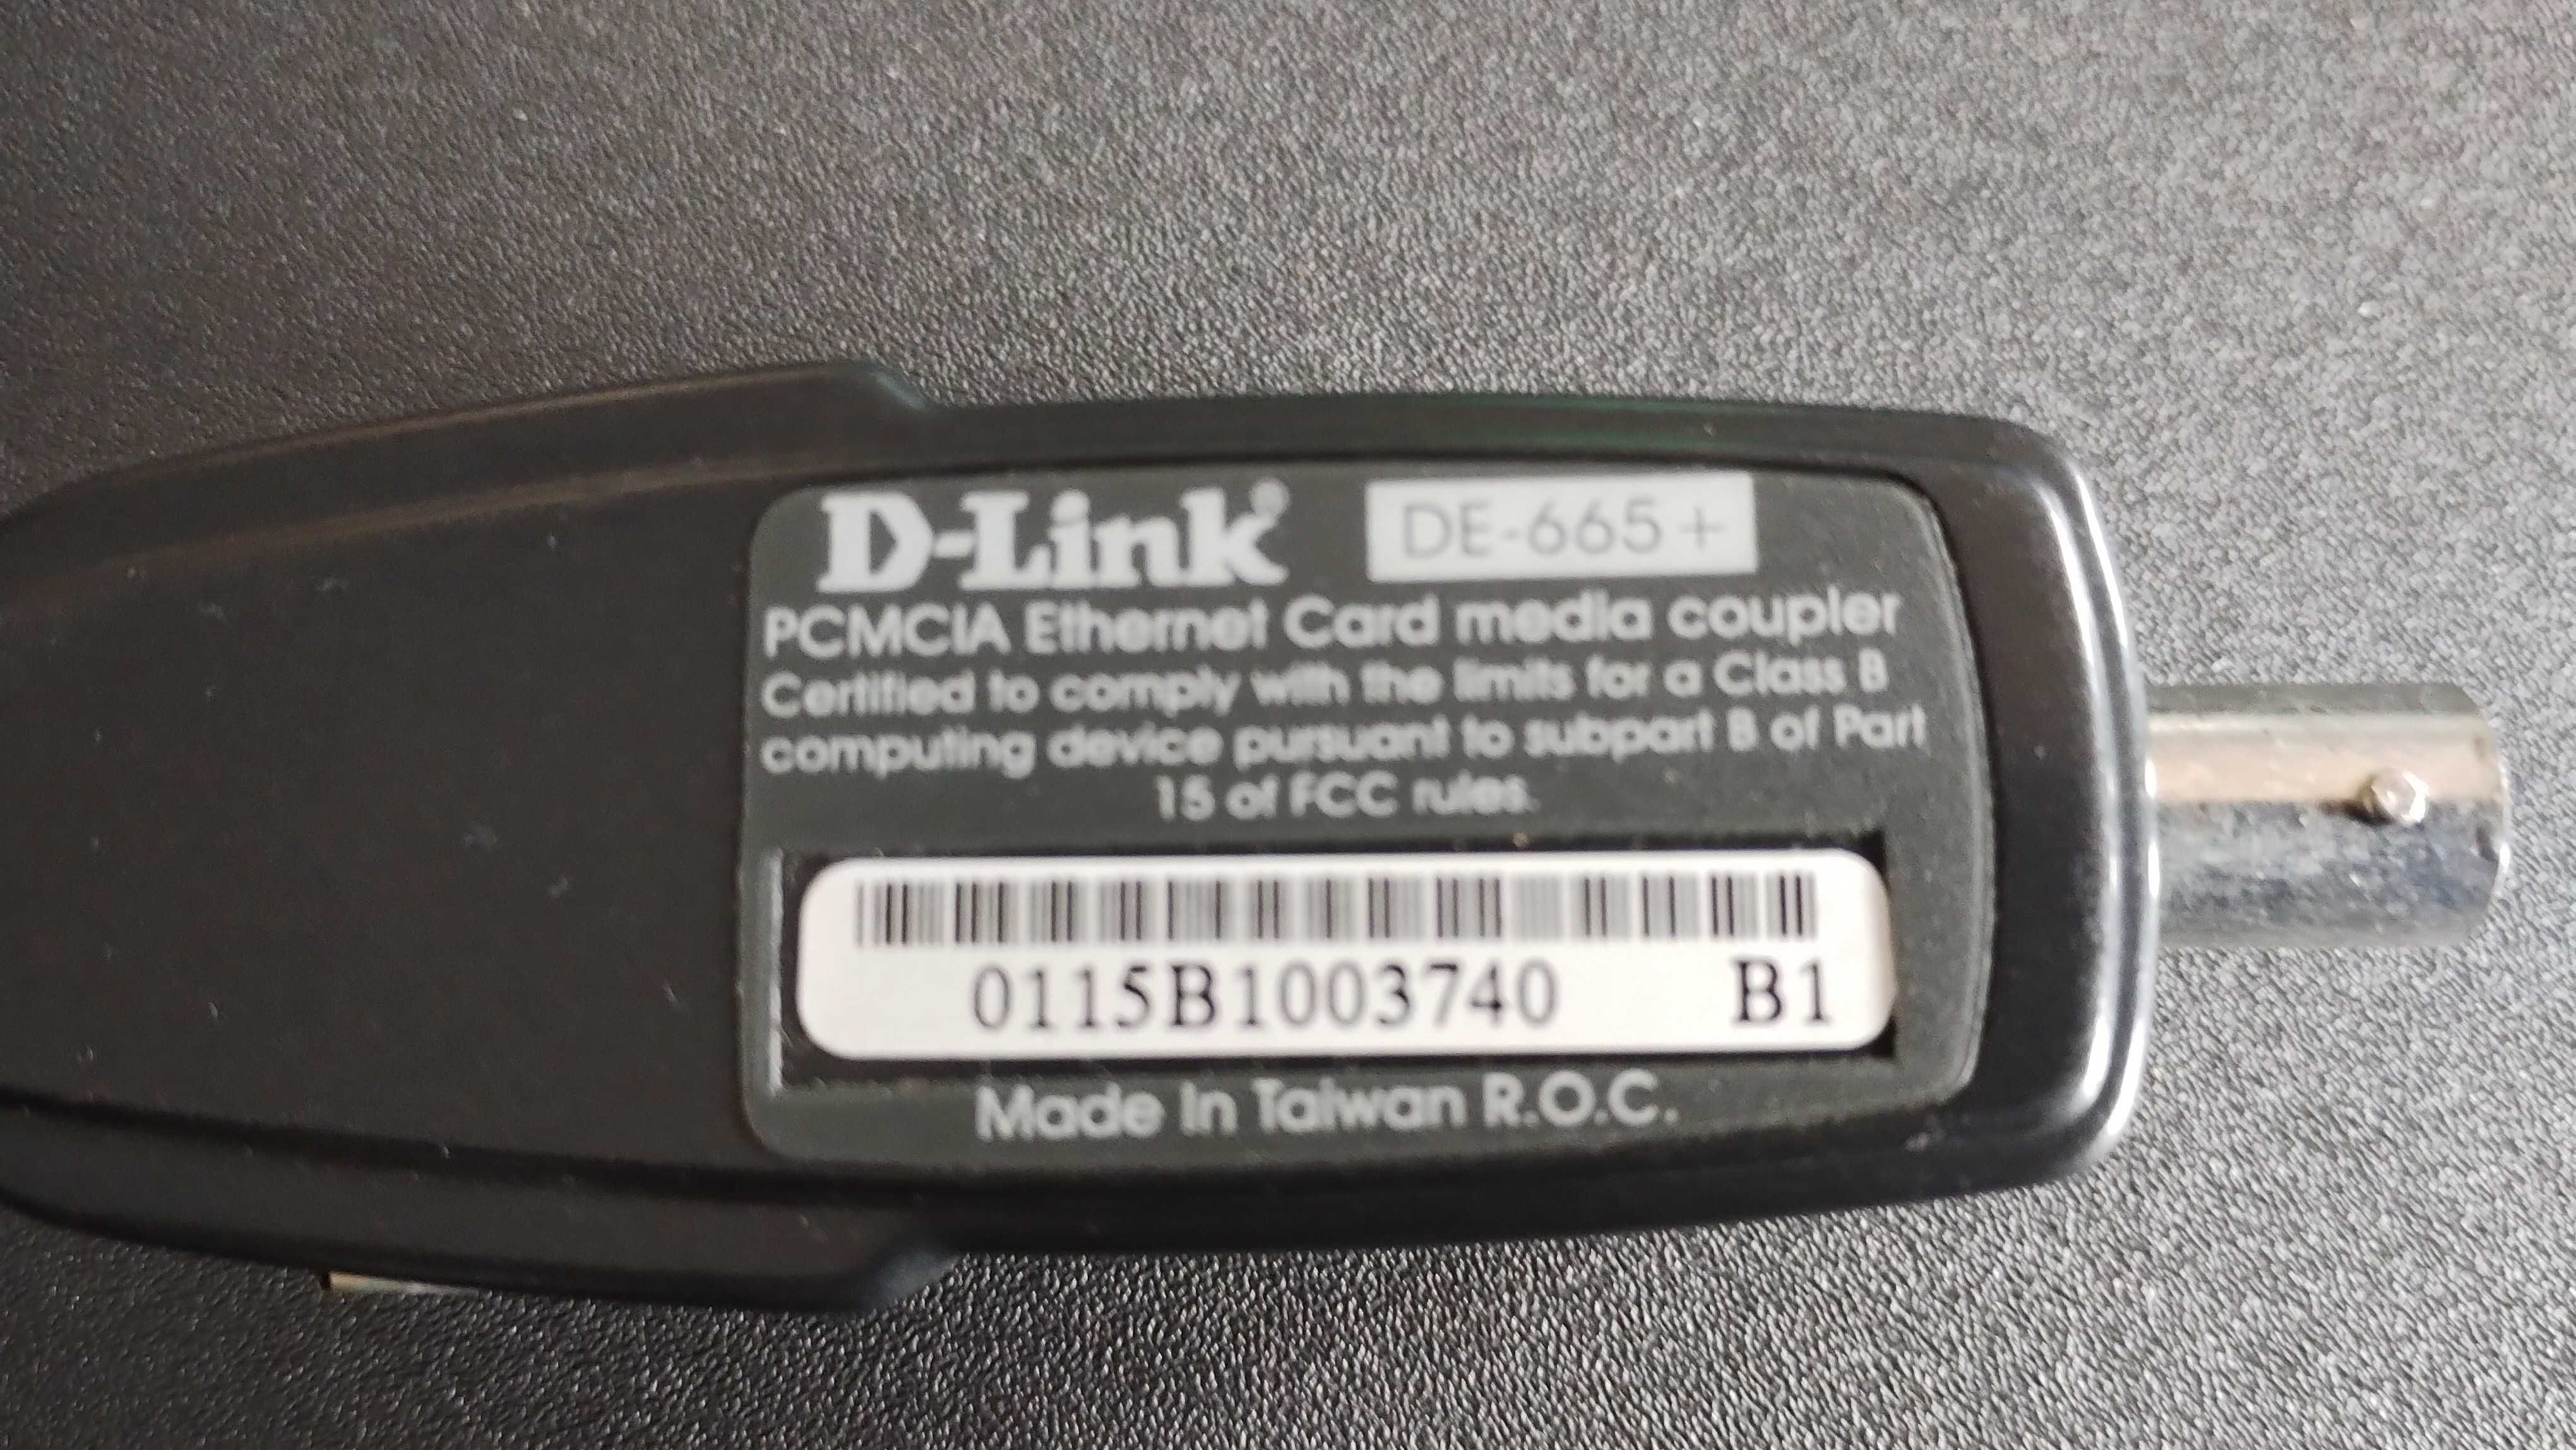 D-LINK DE-665+, Ehternet Card Media Coupler